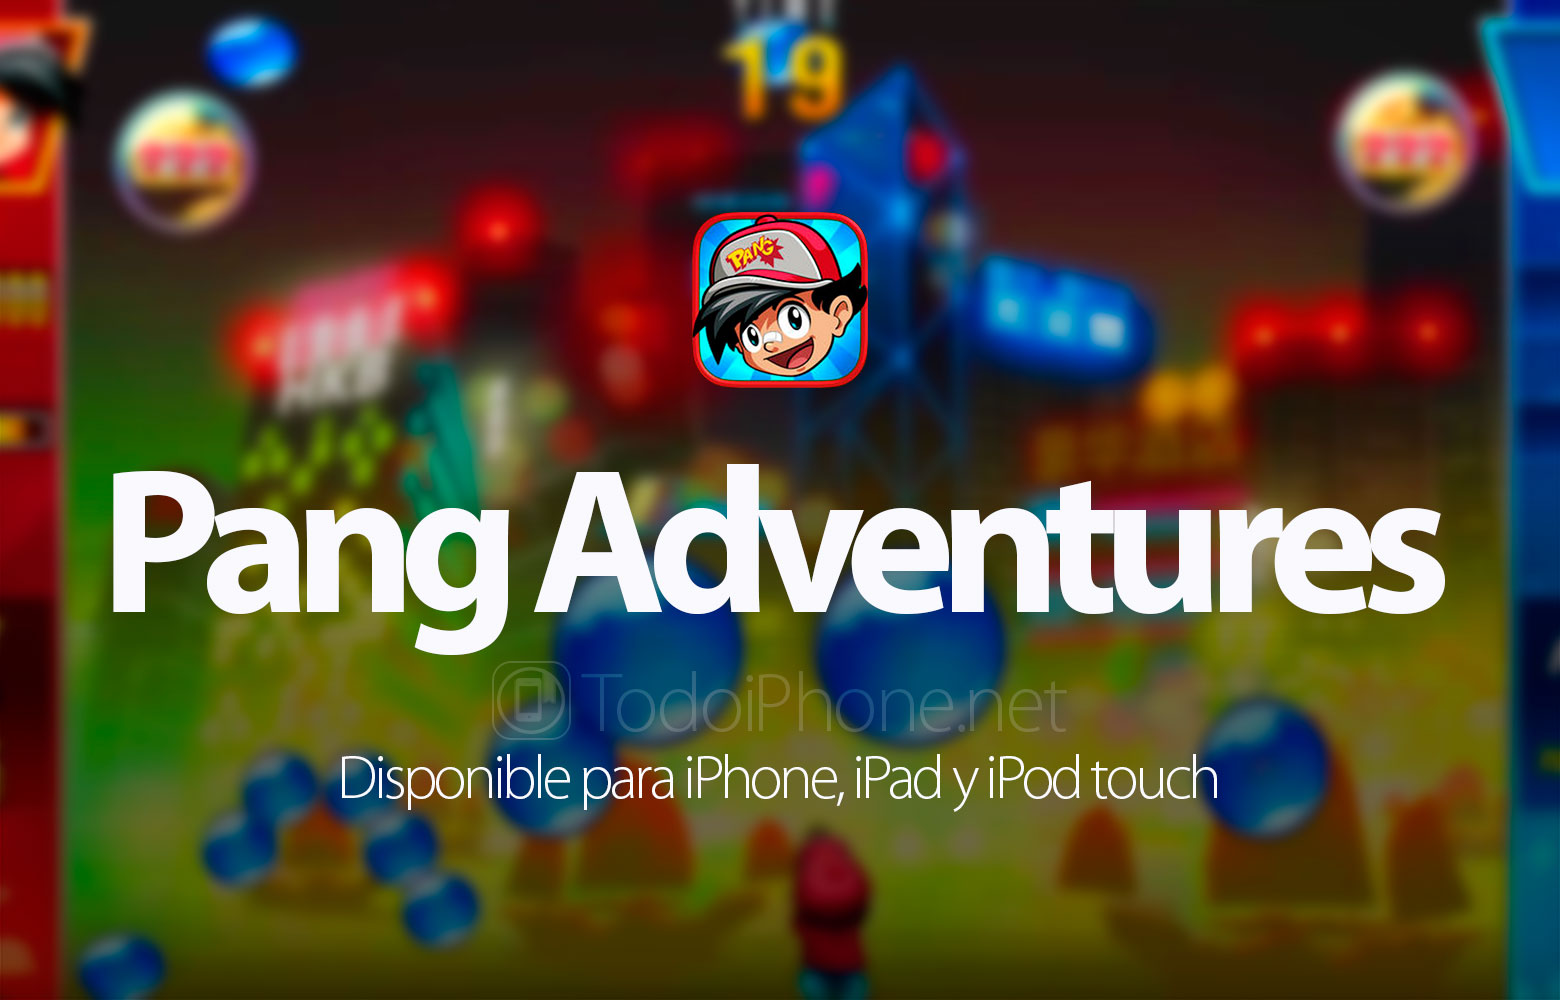 pang-adventures-iphone-ipad